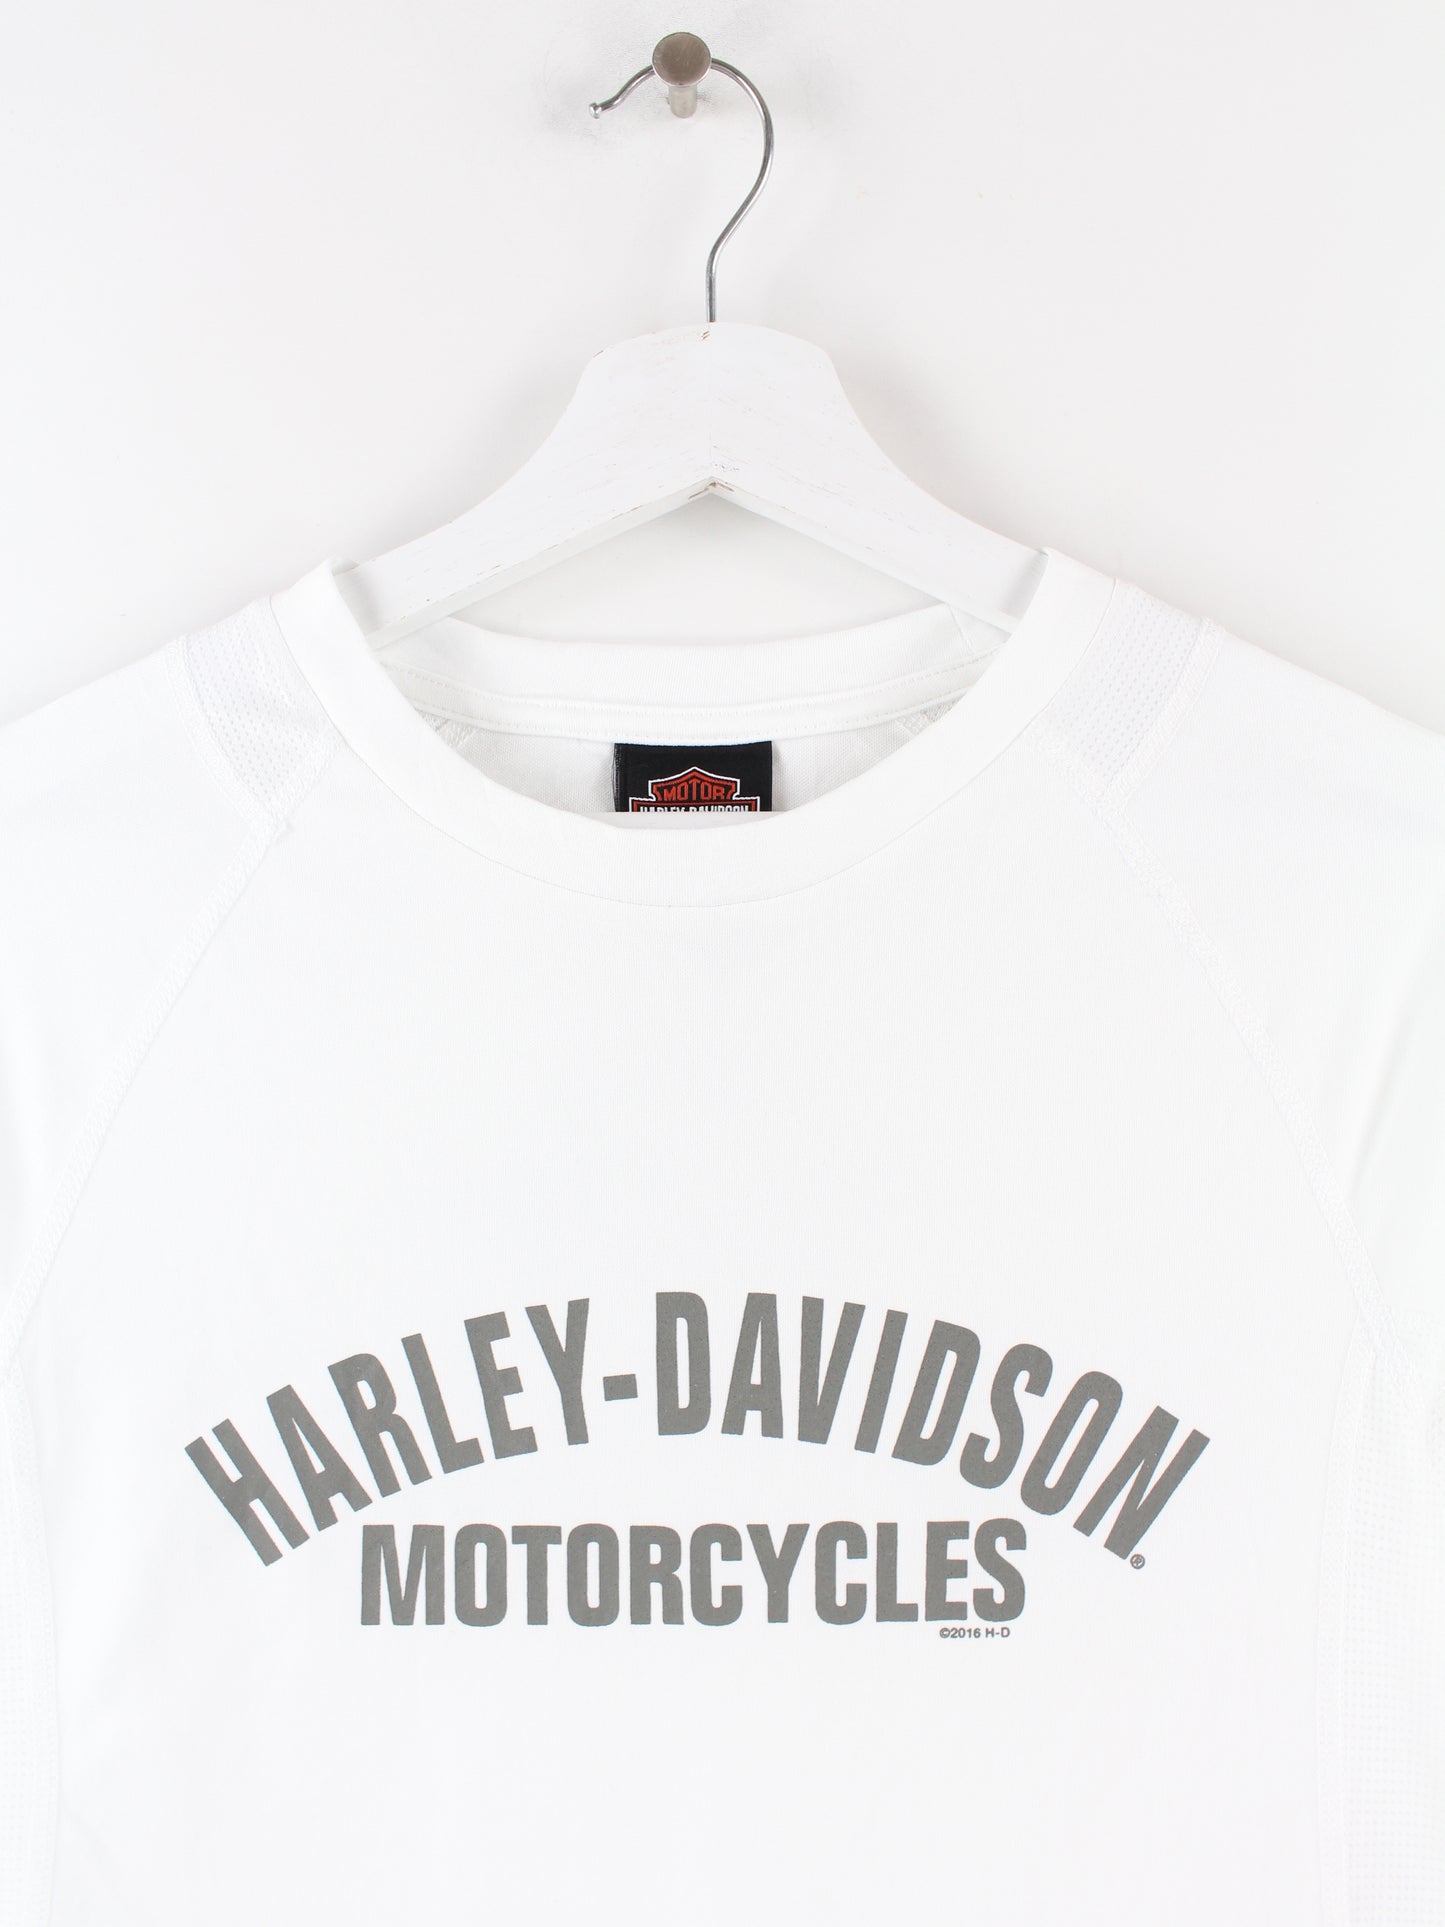 Harley Davidson Sport T-Shirt Weiß S